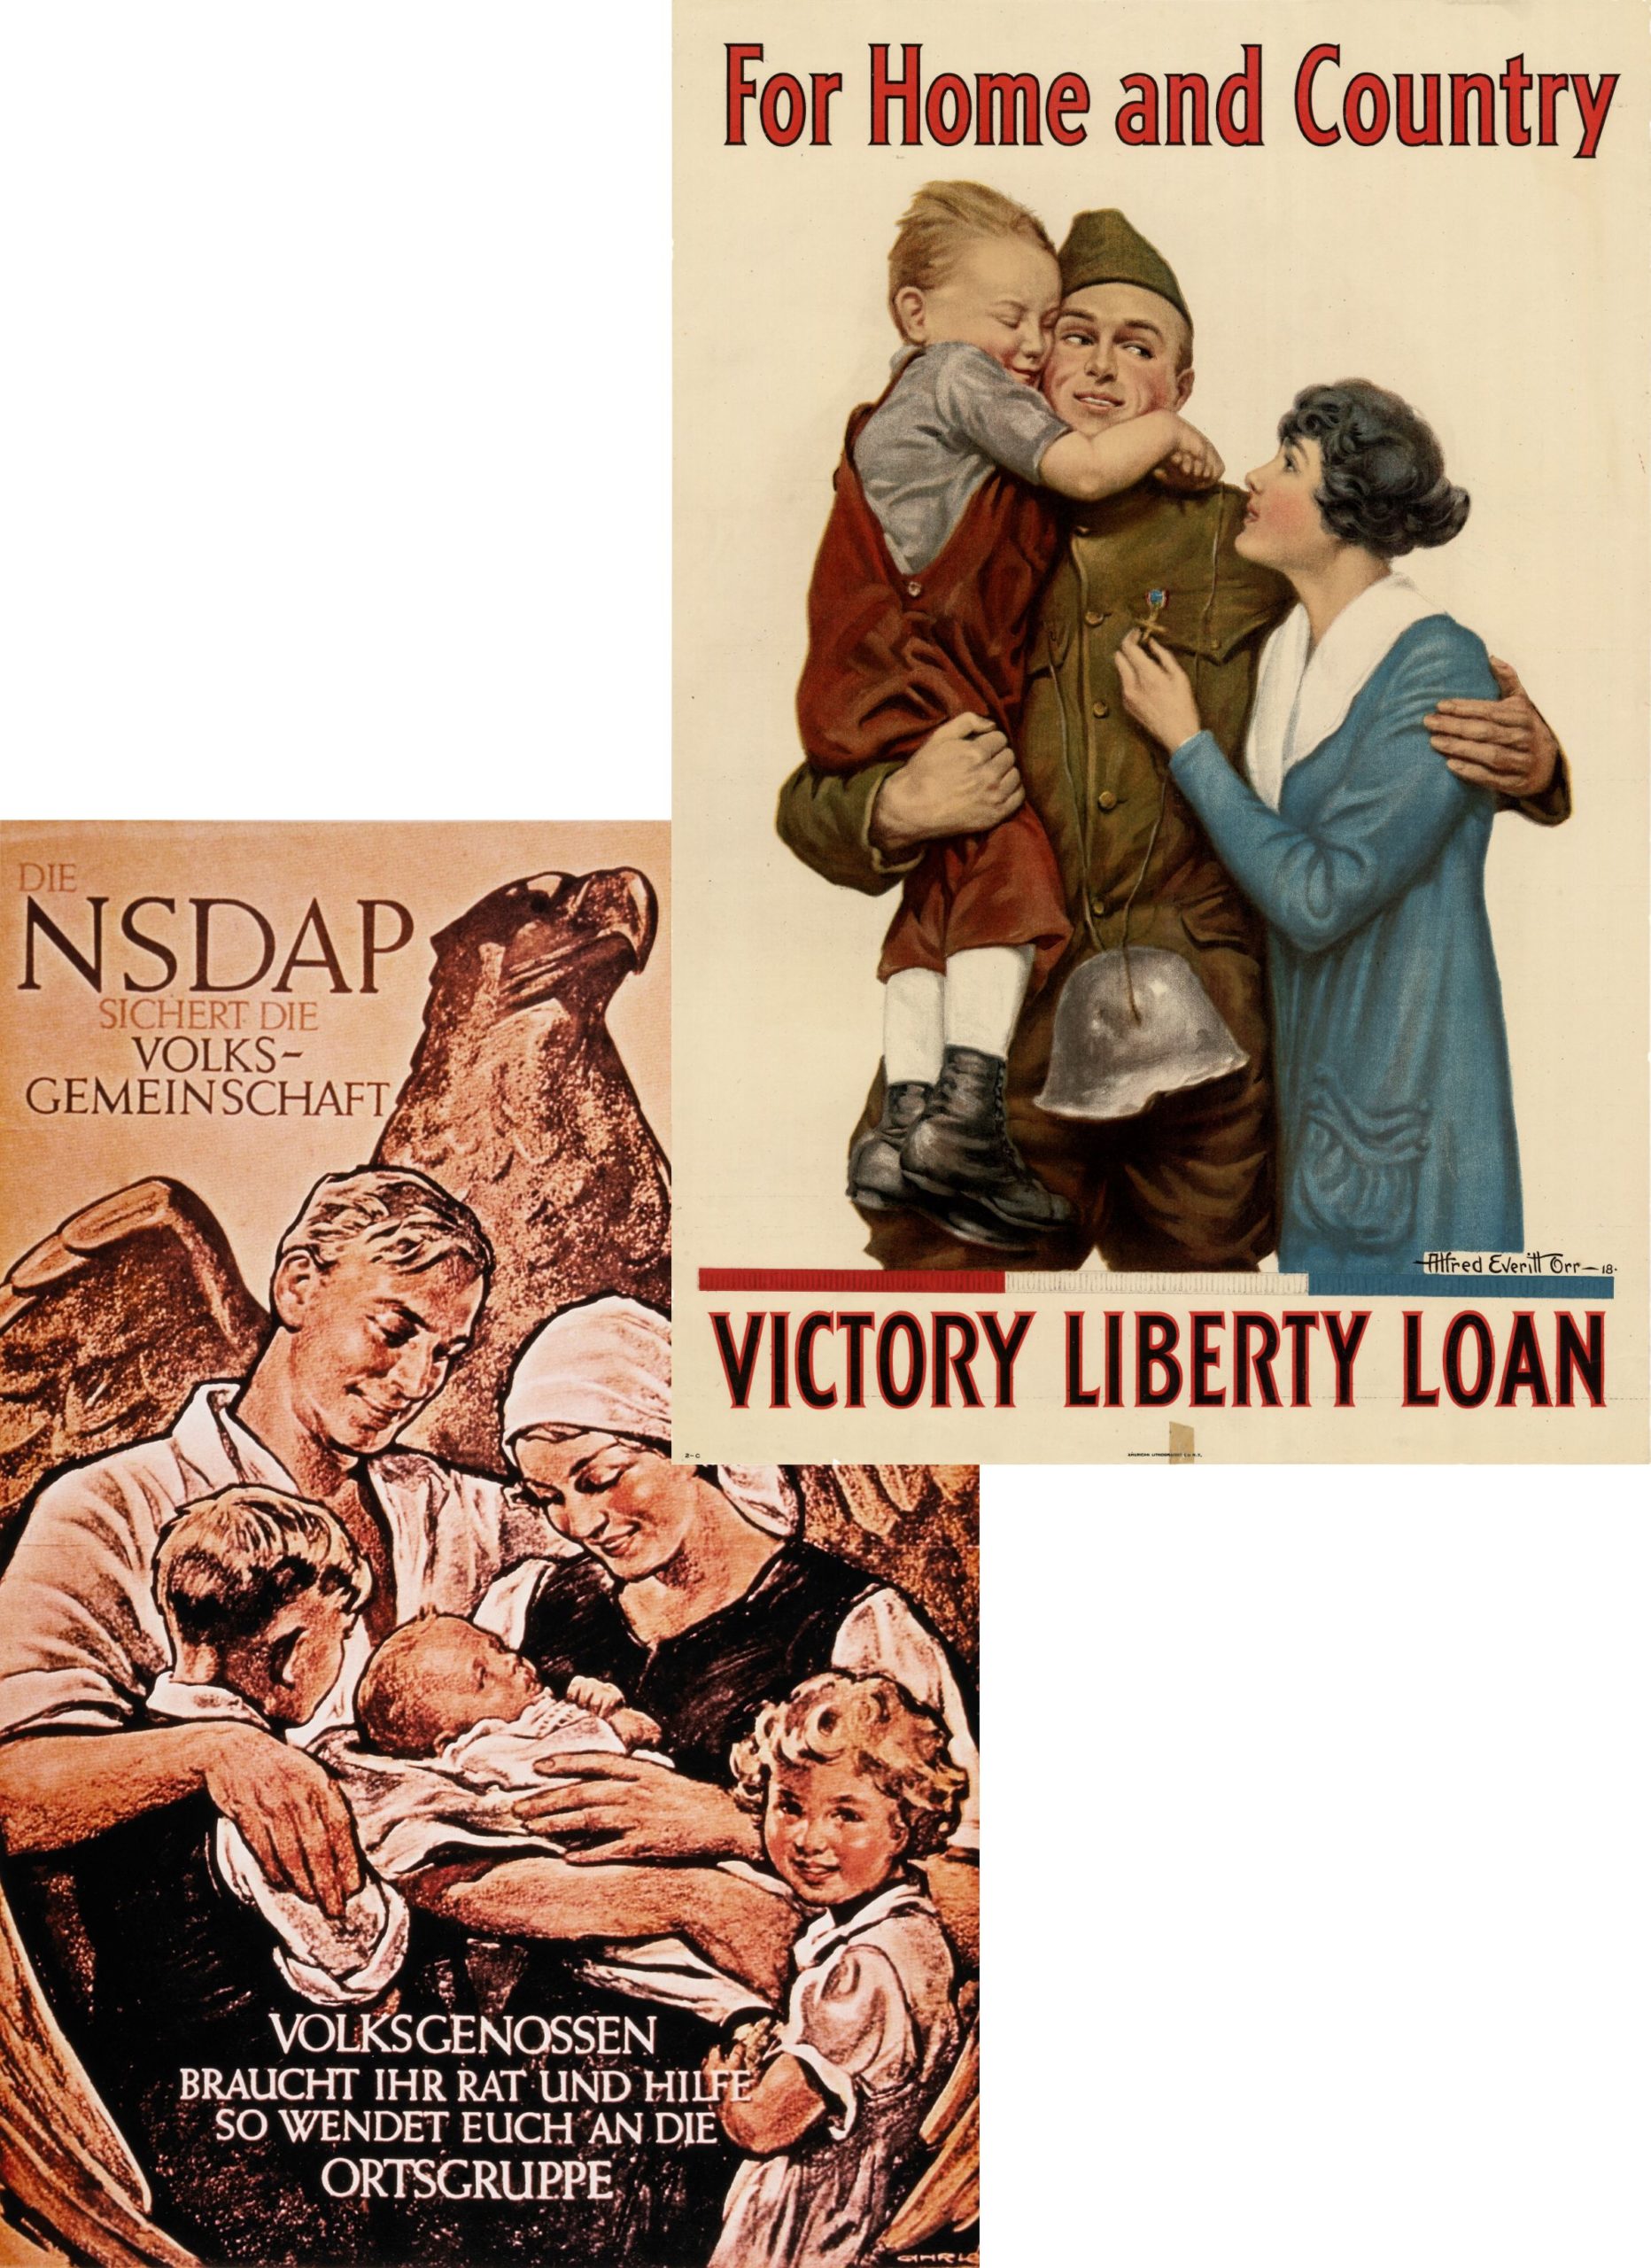 American WWI propaganda vs Nazi propaganda